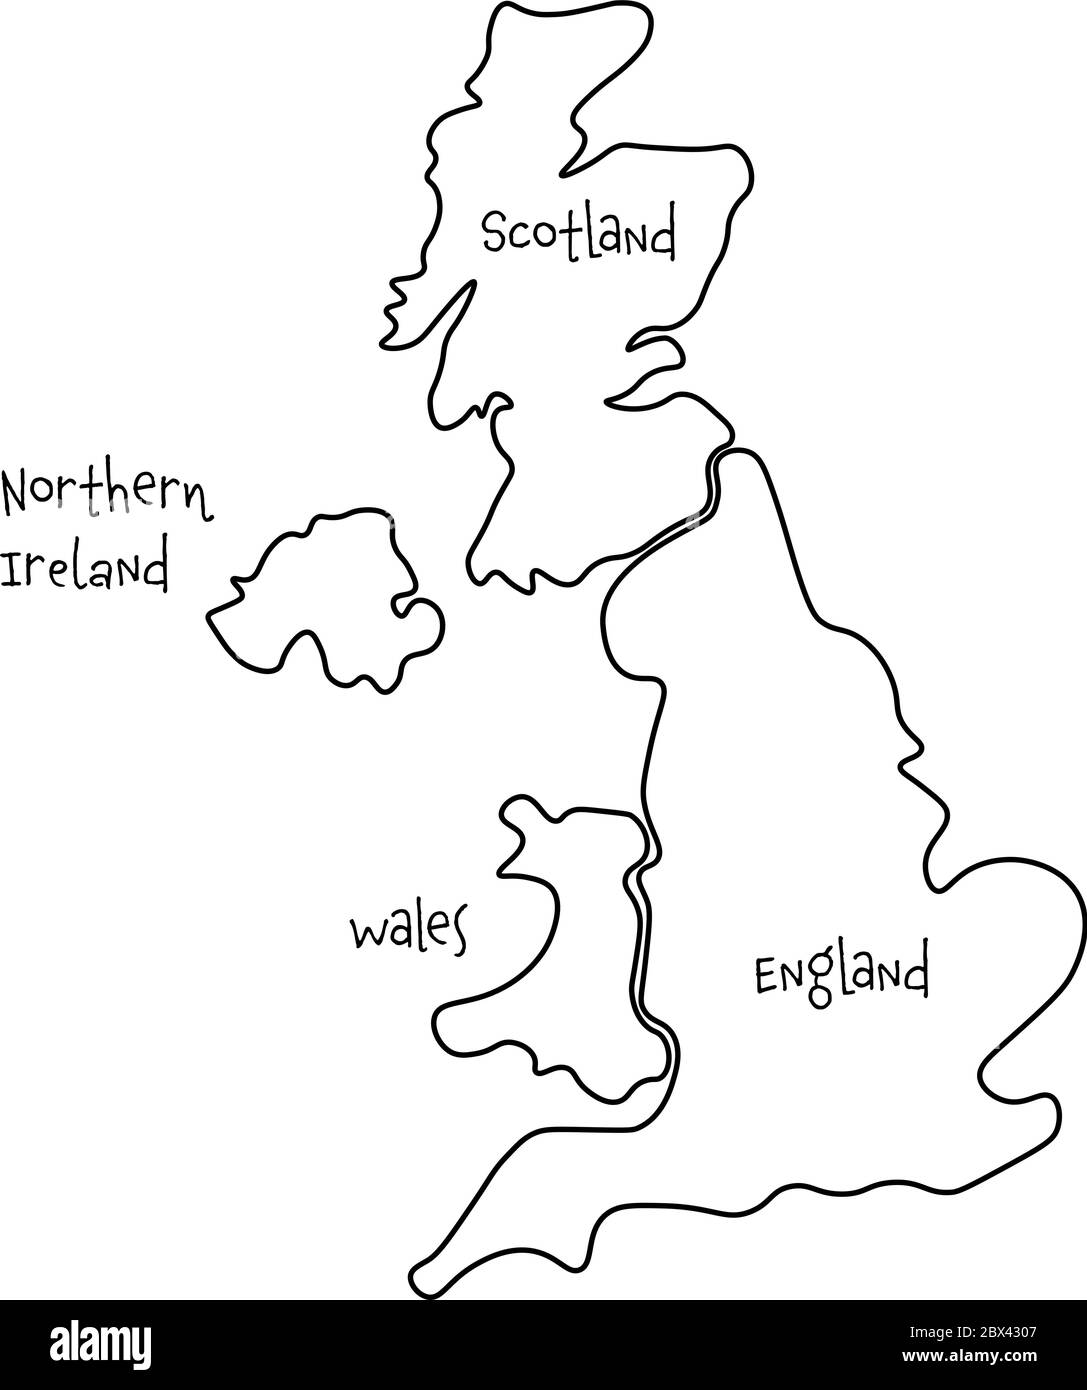 Royaume-Uni, alias Royaume-Uni, de Grande-Bretagne et d'Irlande du Nord carte  vierge dessinée à la main. Divisé en quatre pays : l'Angleterre, le pays de  Galles, l'Écosse et le ni. Illustration simple à